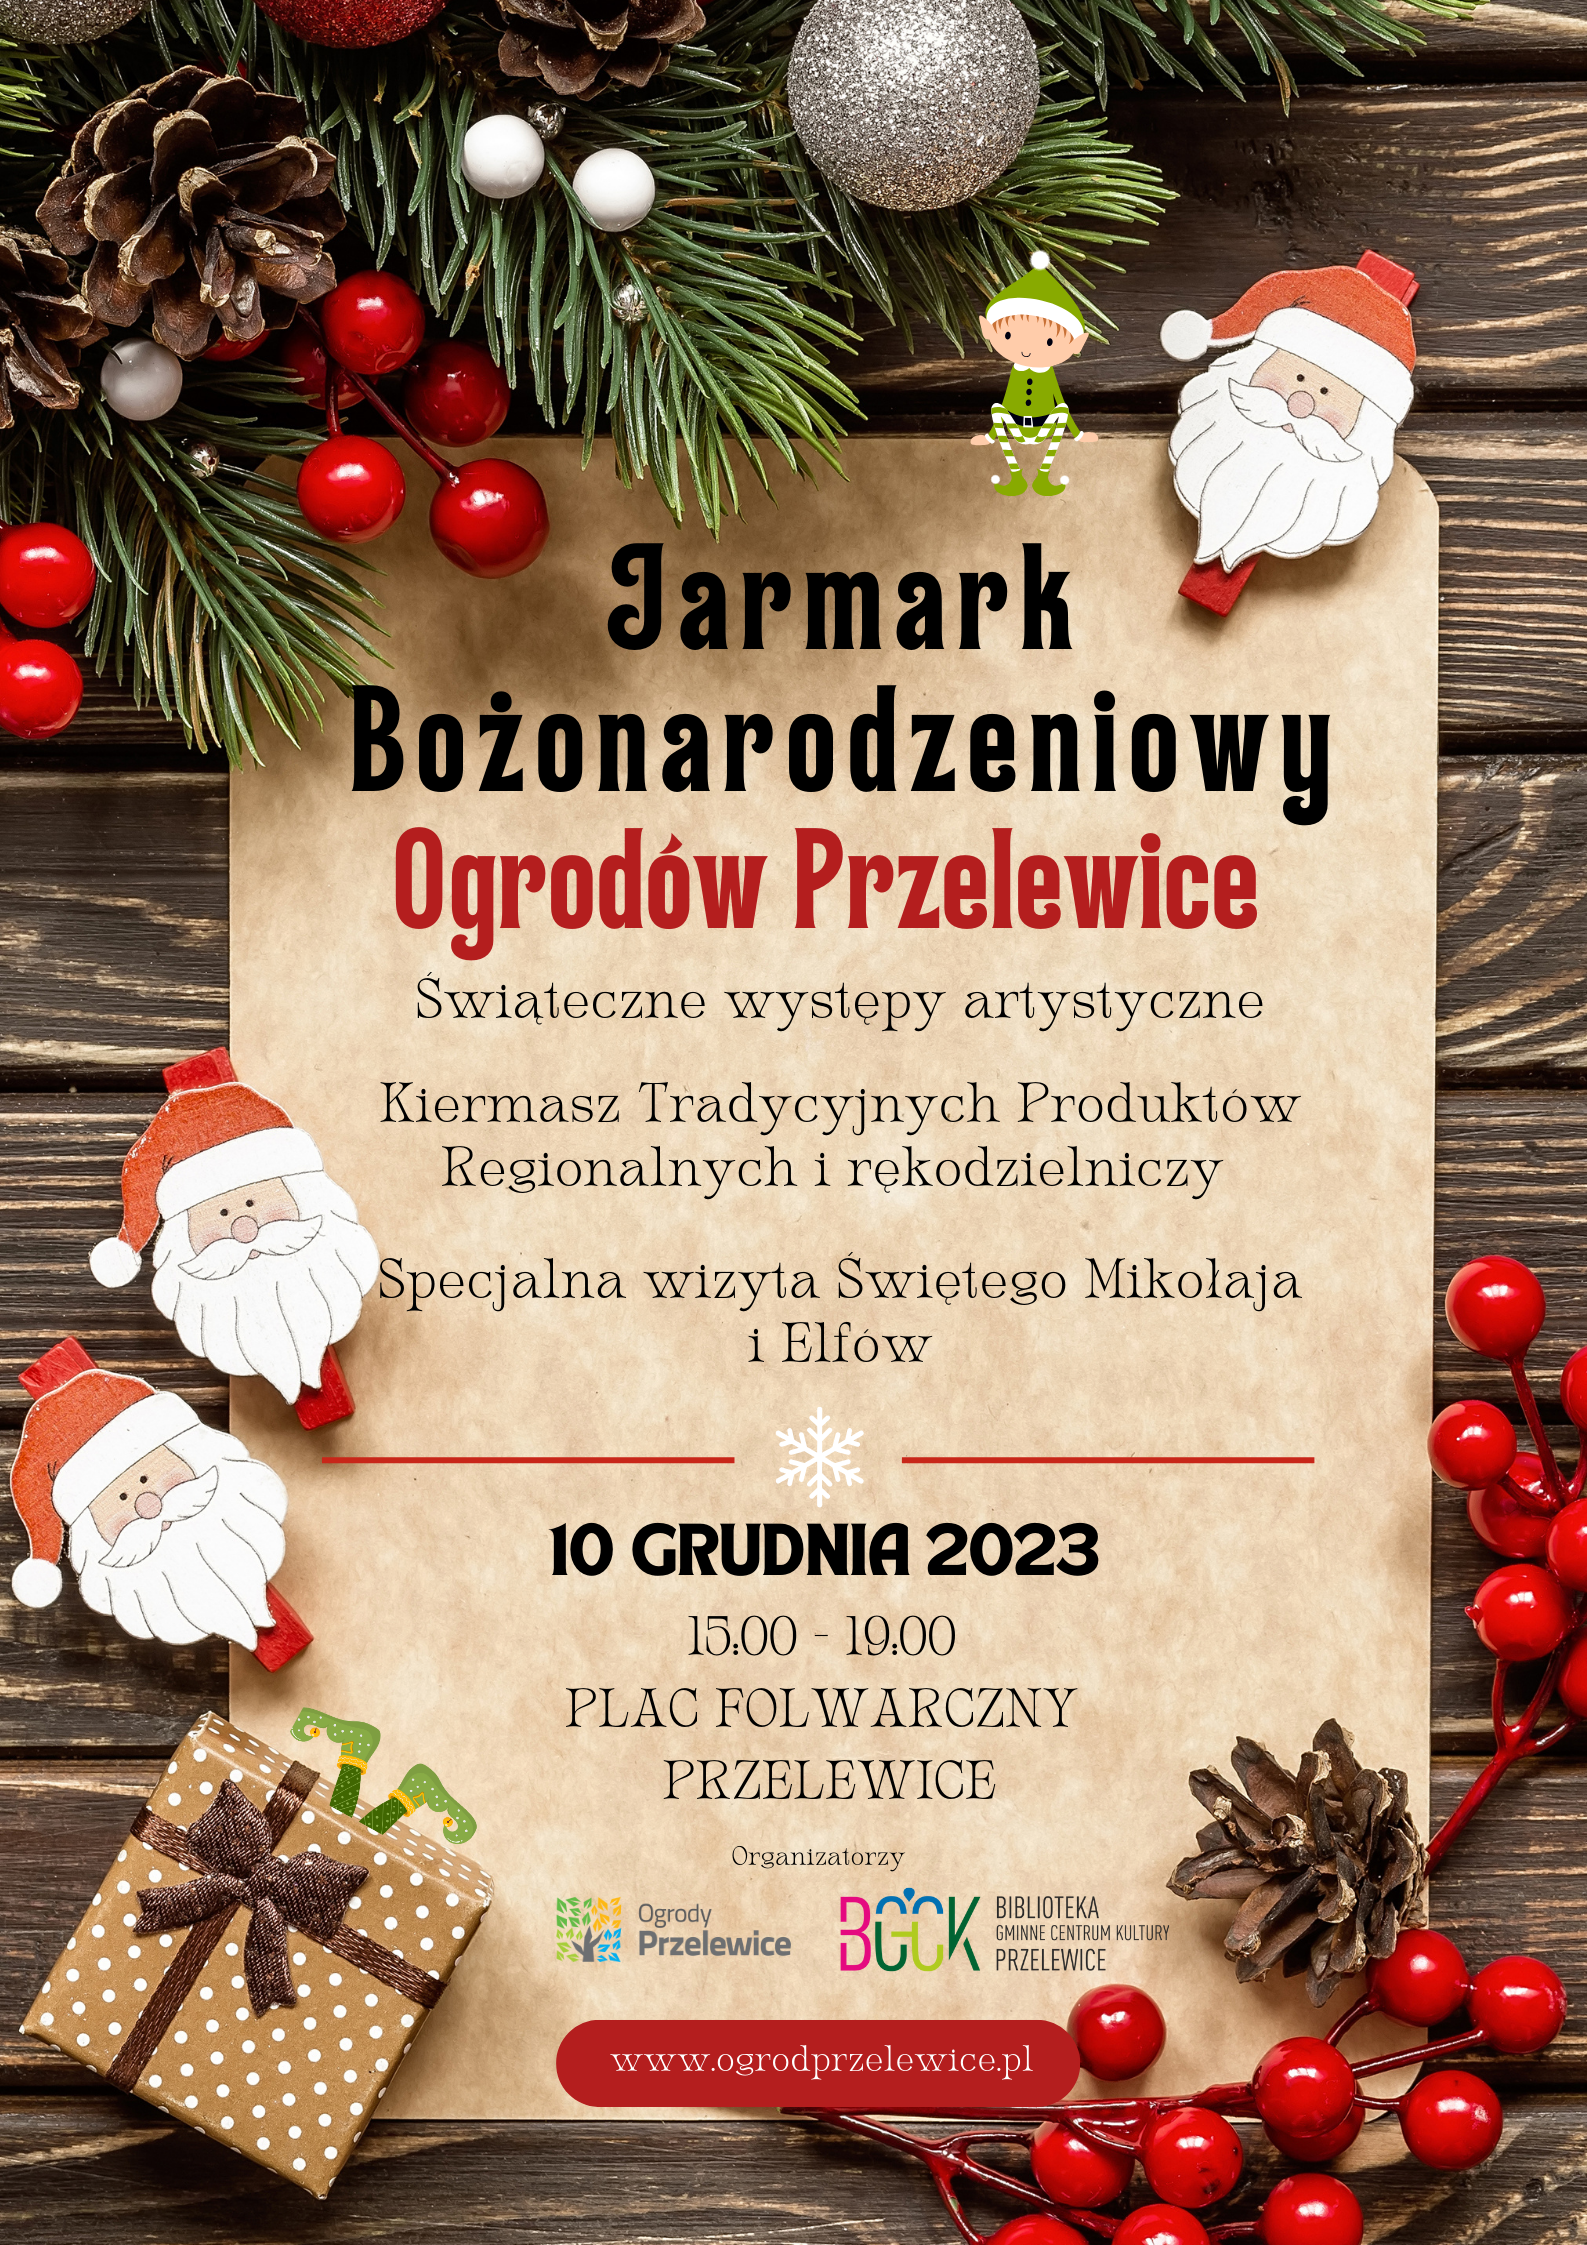 You are currently viewing Jarmark Bożonarodzeniowy Ogrodów Przelewice